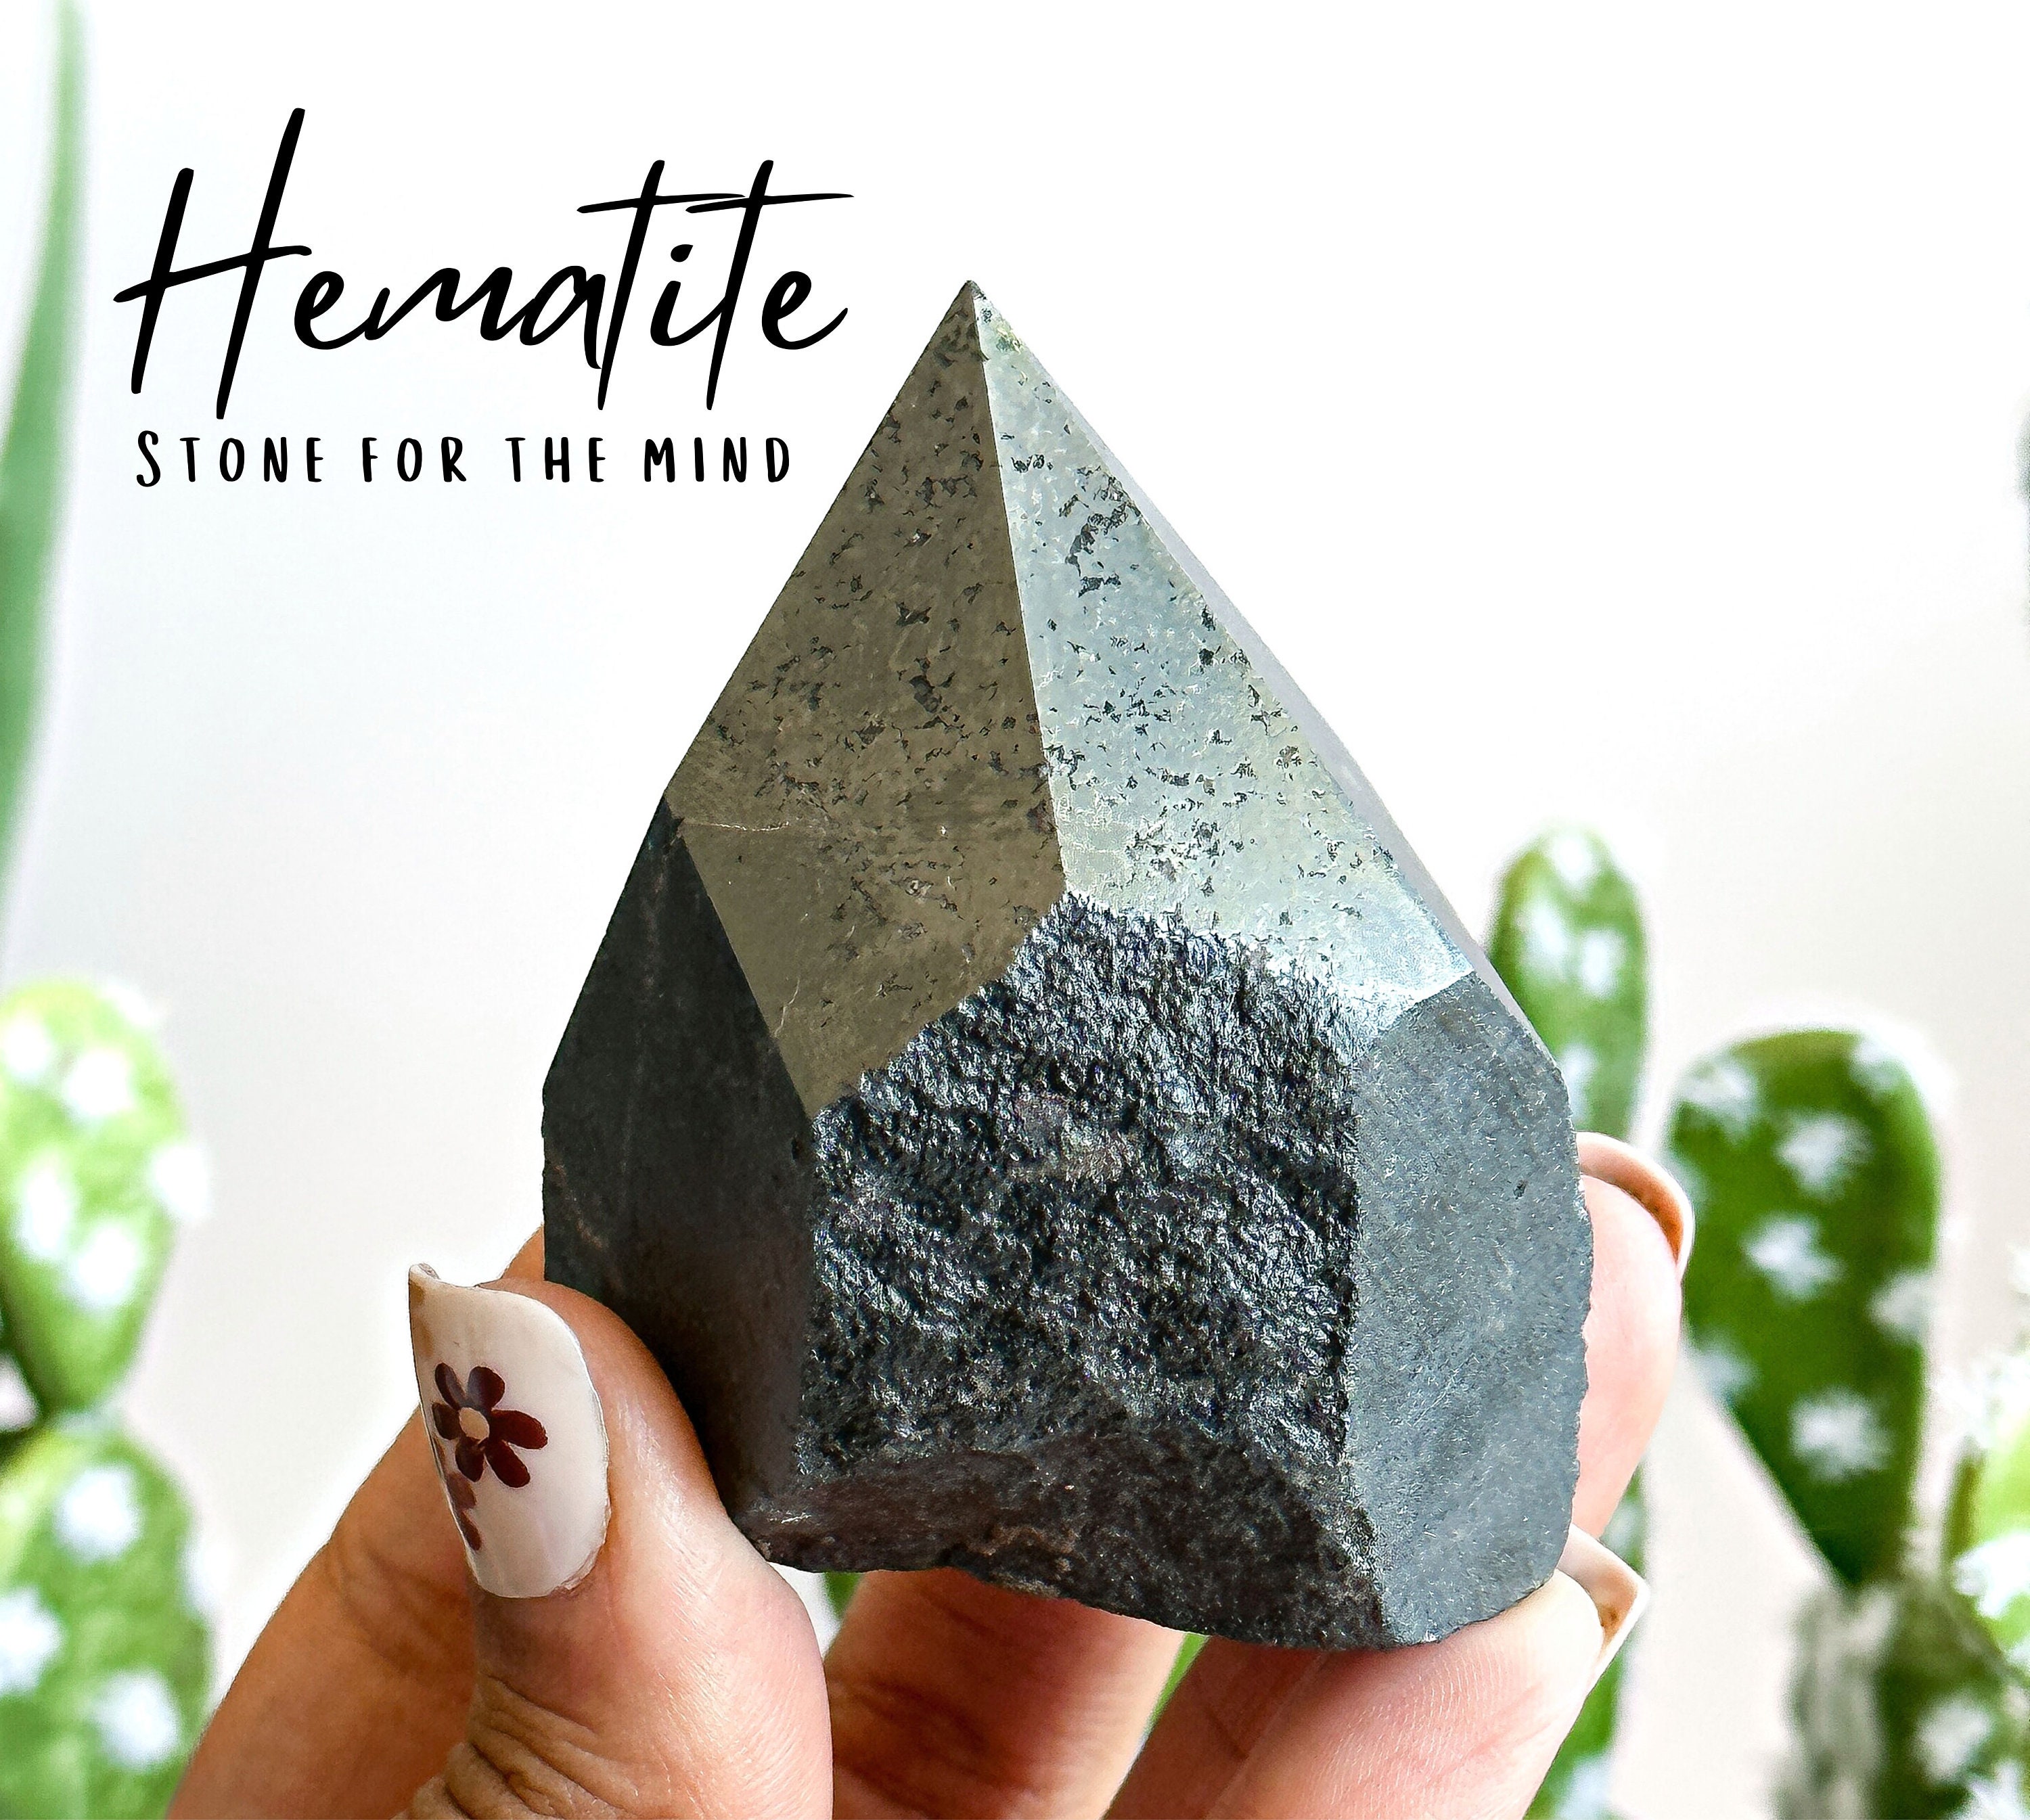 Raw Hematite Stone Hematite Rough Hematite Crystal Healing Crystals &  Stones Natural Hematite Crystal Real Hematite Stone Raw 